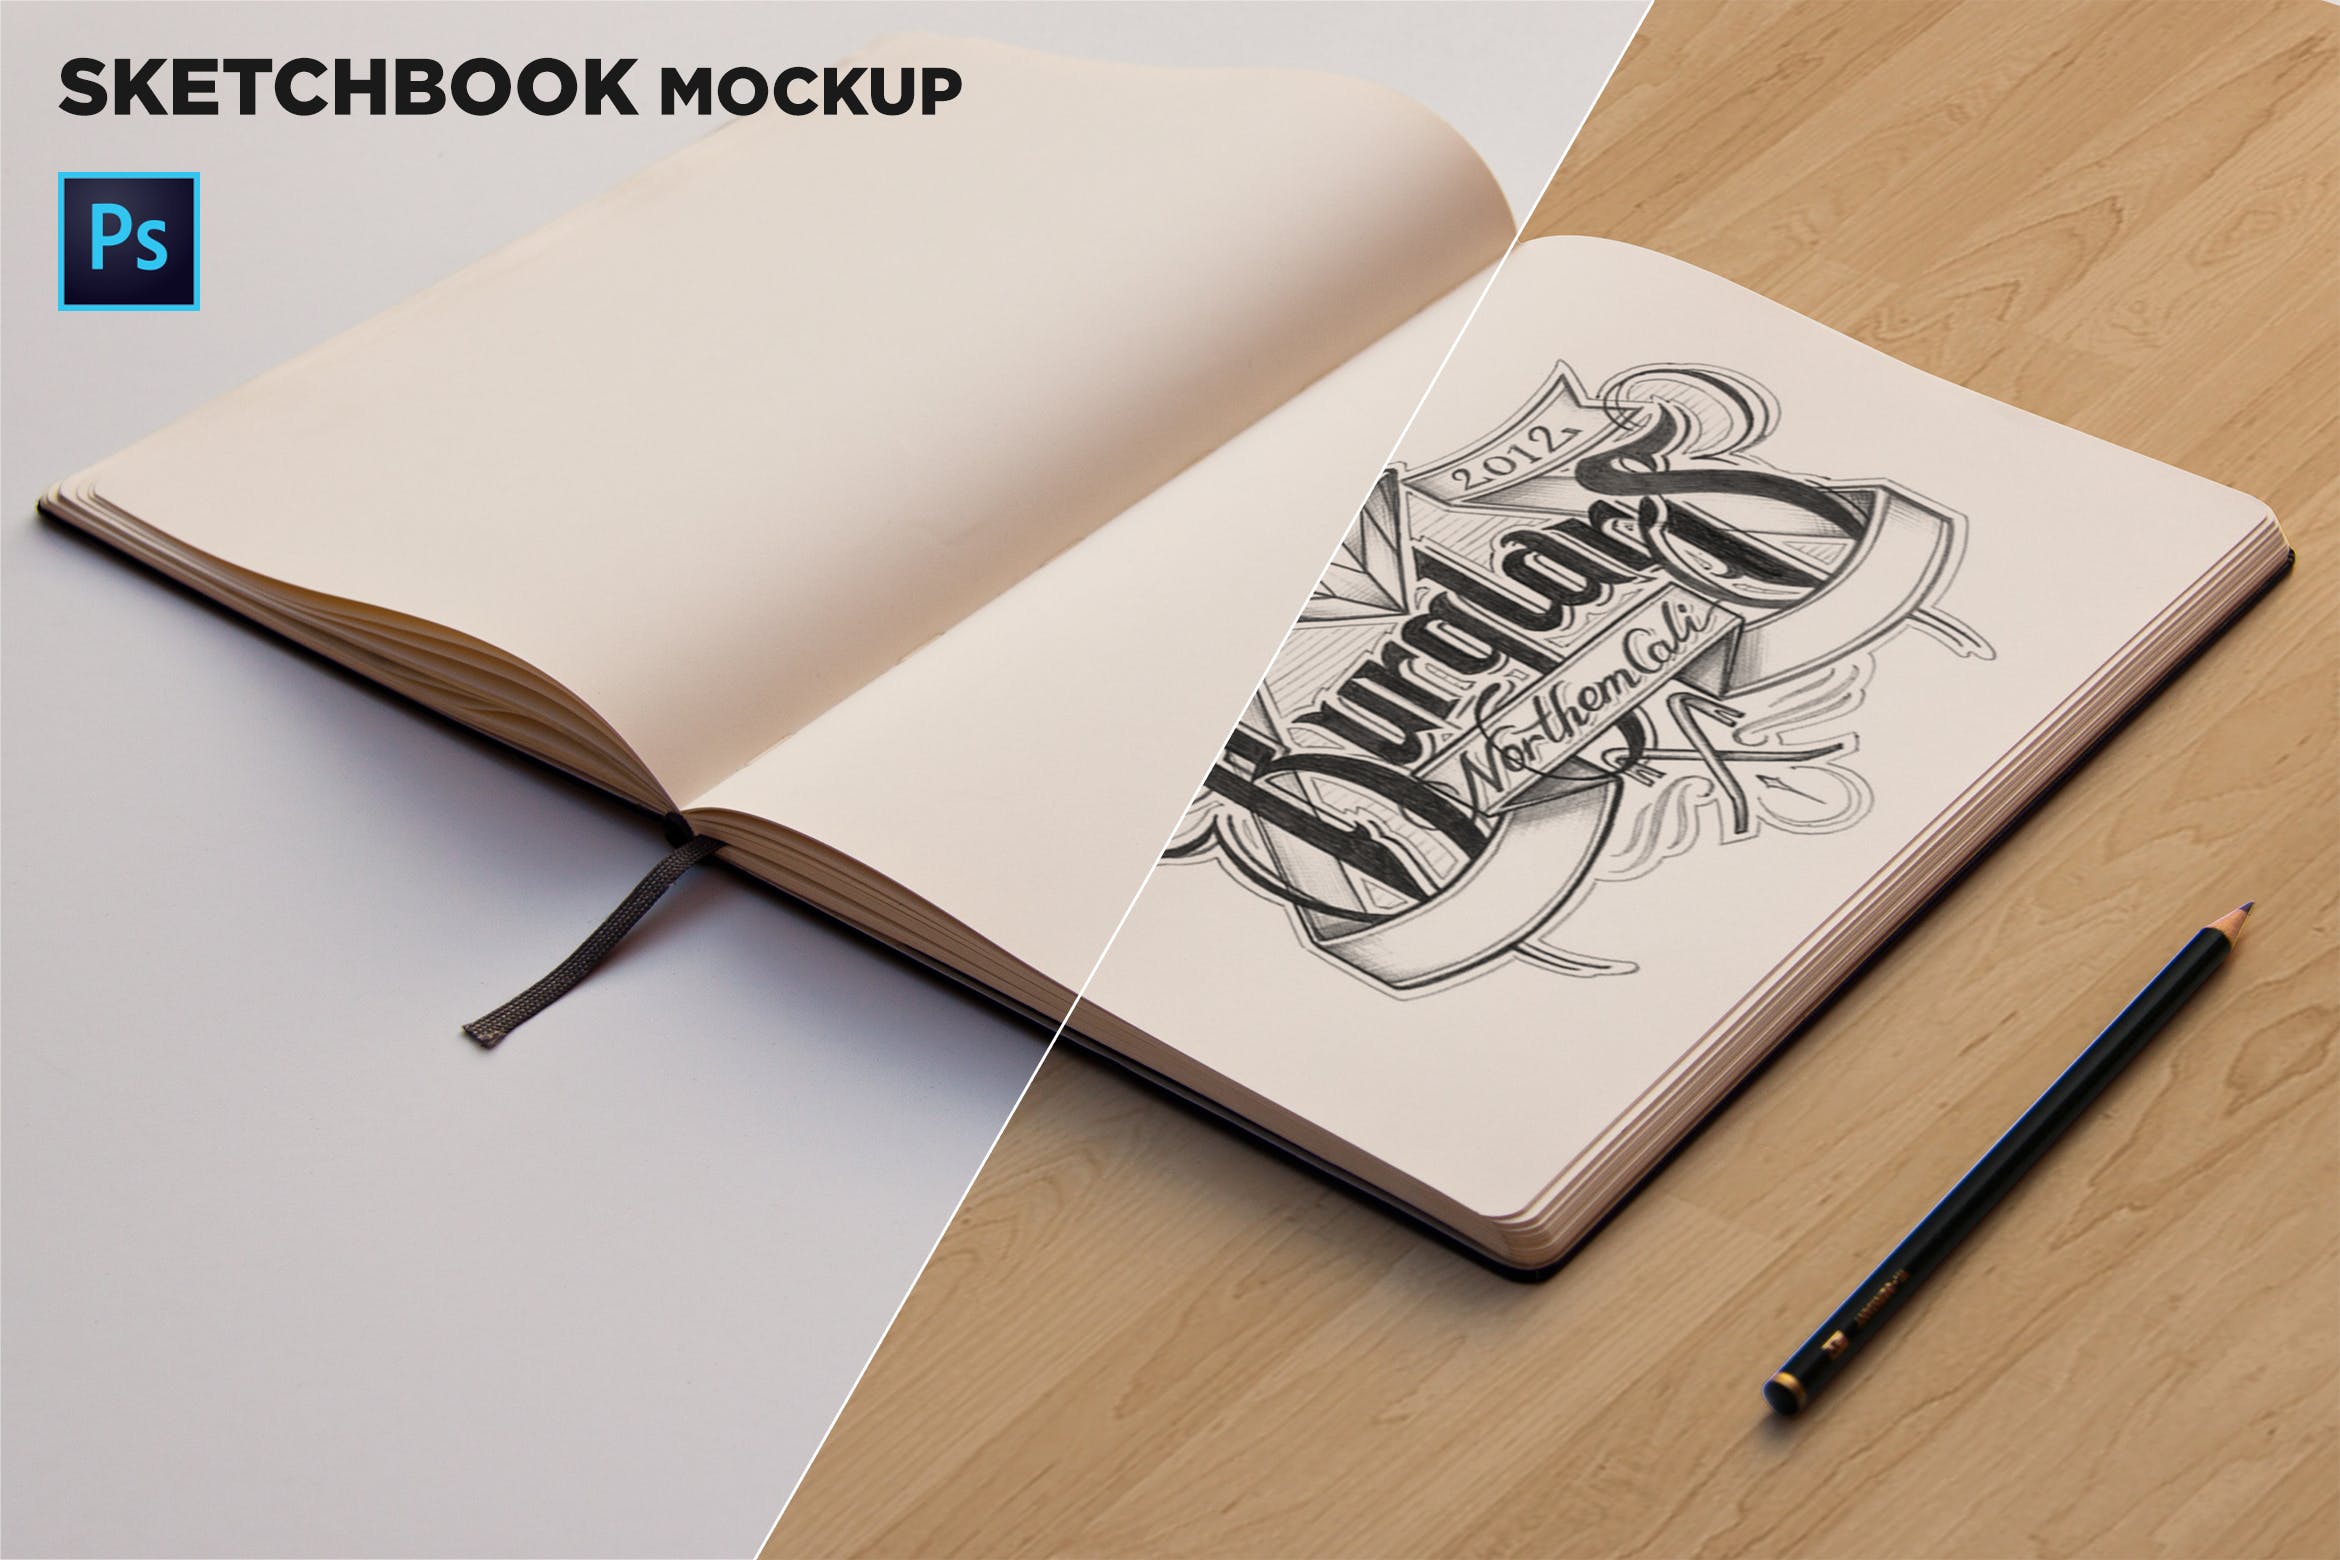 素描本内页设计/艺术作品展示透视图样机第一素材精选 Sketchbook Mockup Perspective View插图